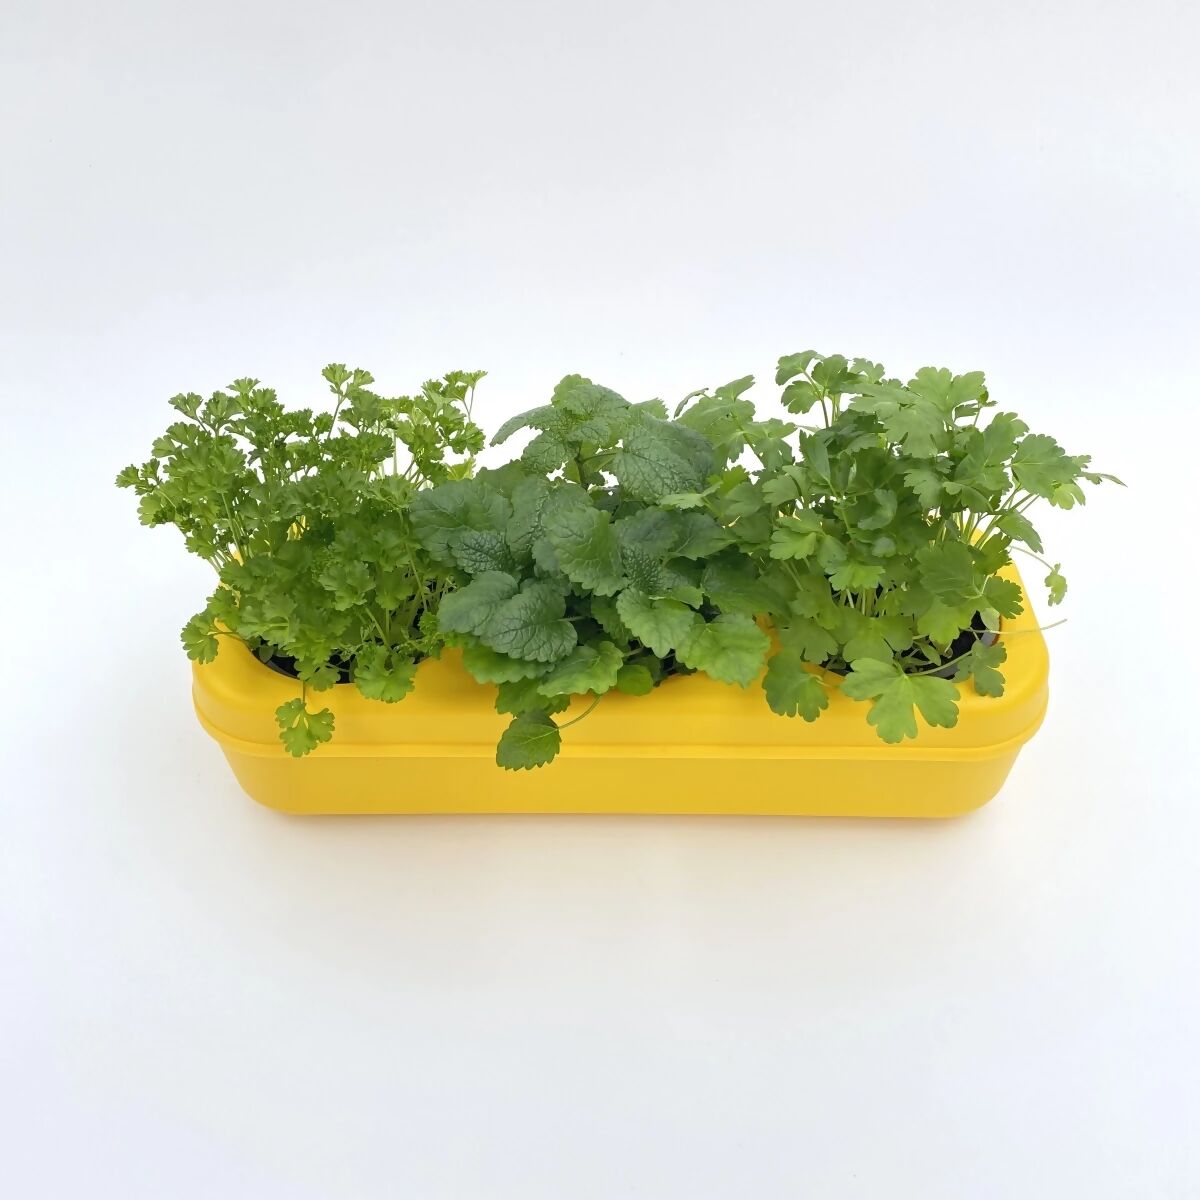 Dreifaches semi-hydroponisches städtisches Gemüsegarten-Set – Gelb 